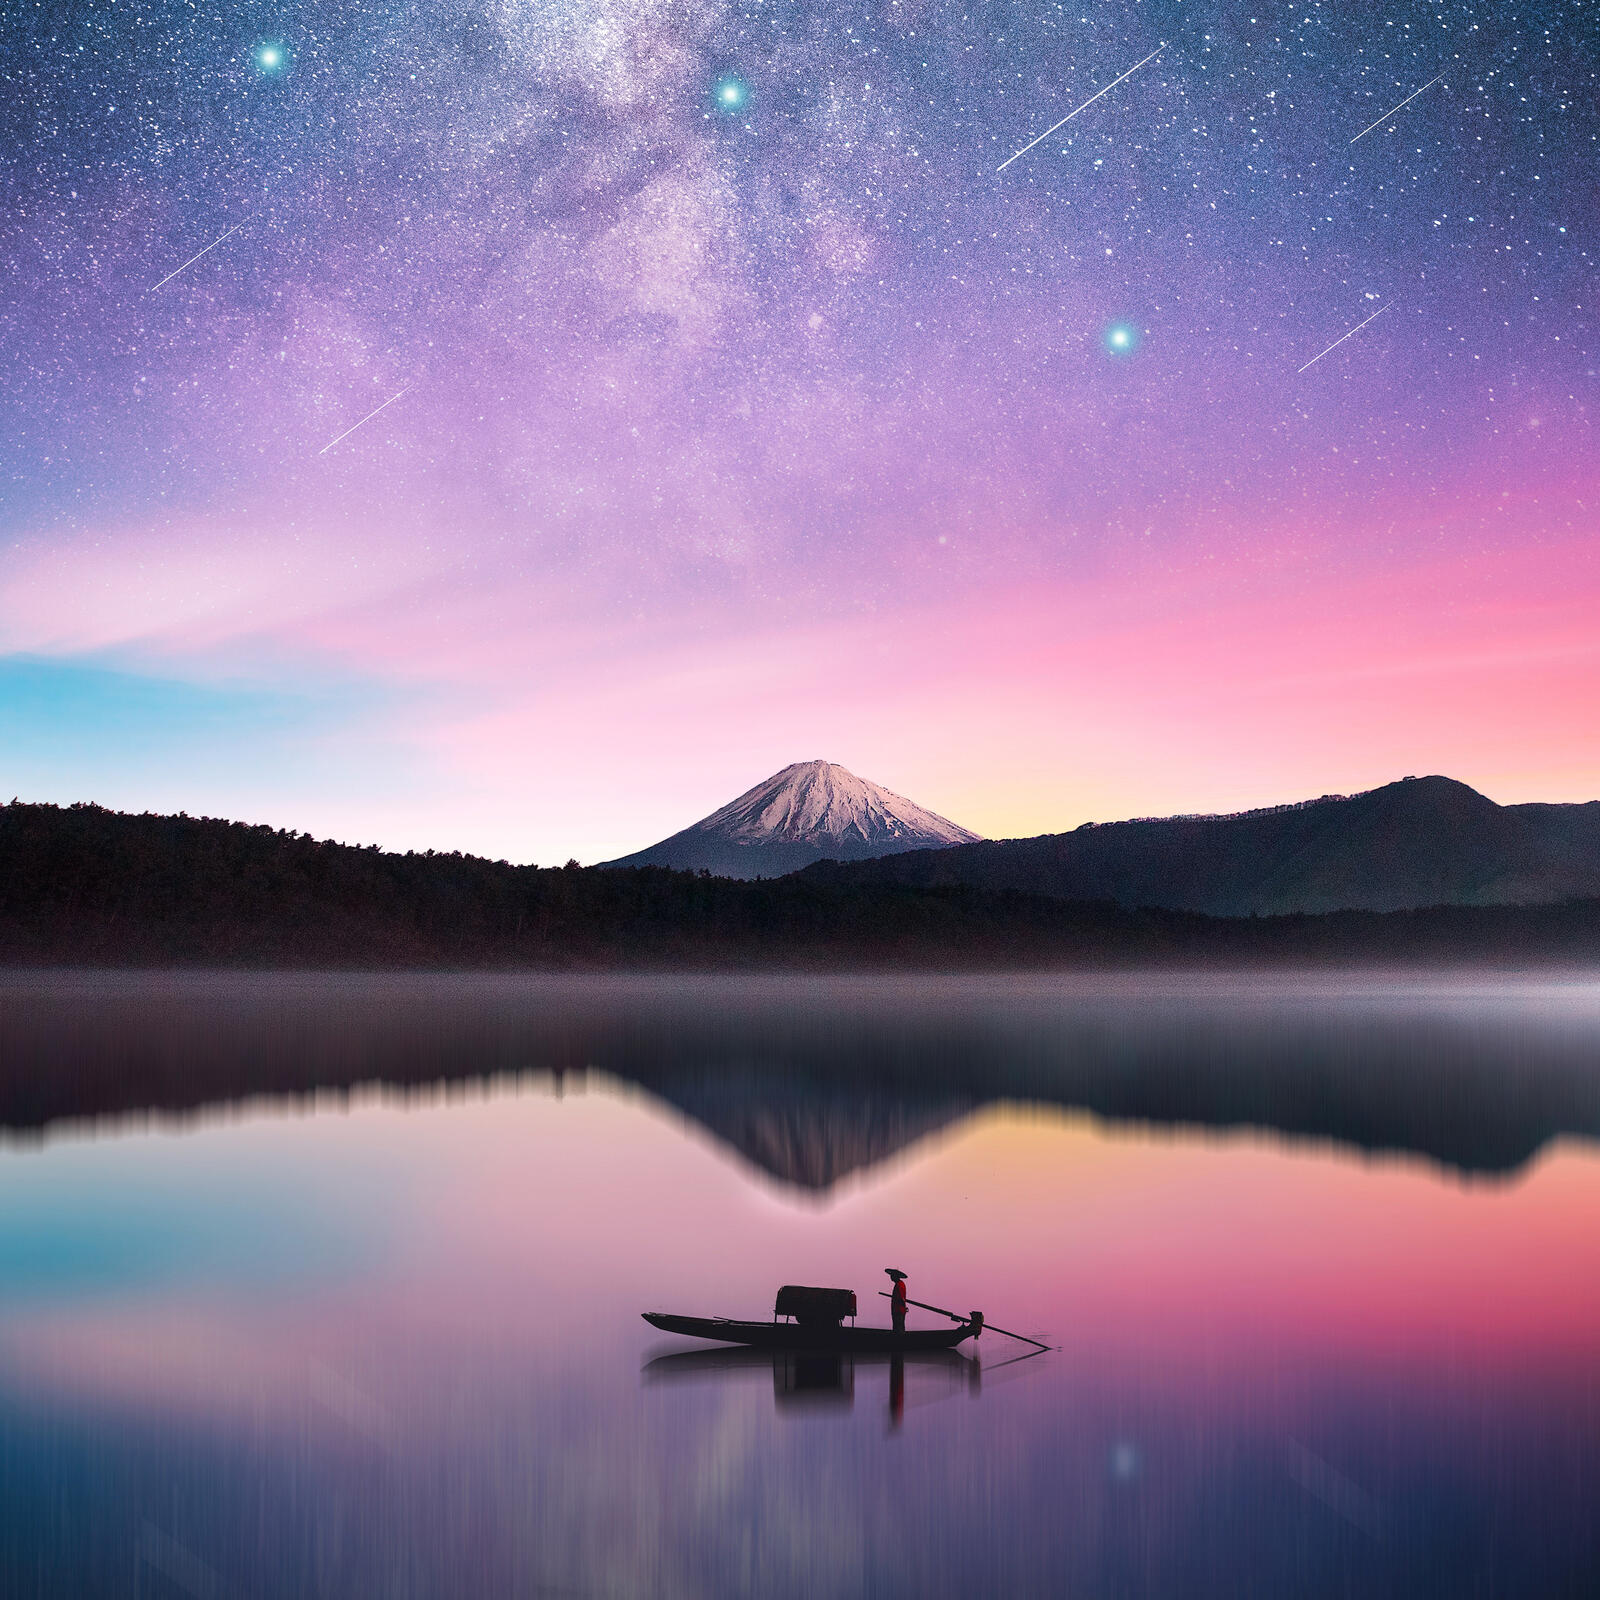 Обои Млечный путь гора Фудзи фотографии на рабочий стол